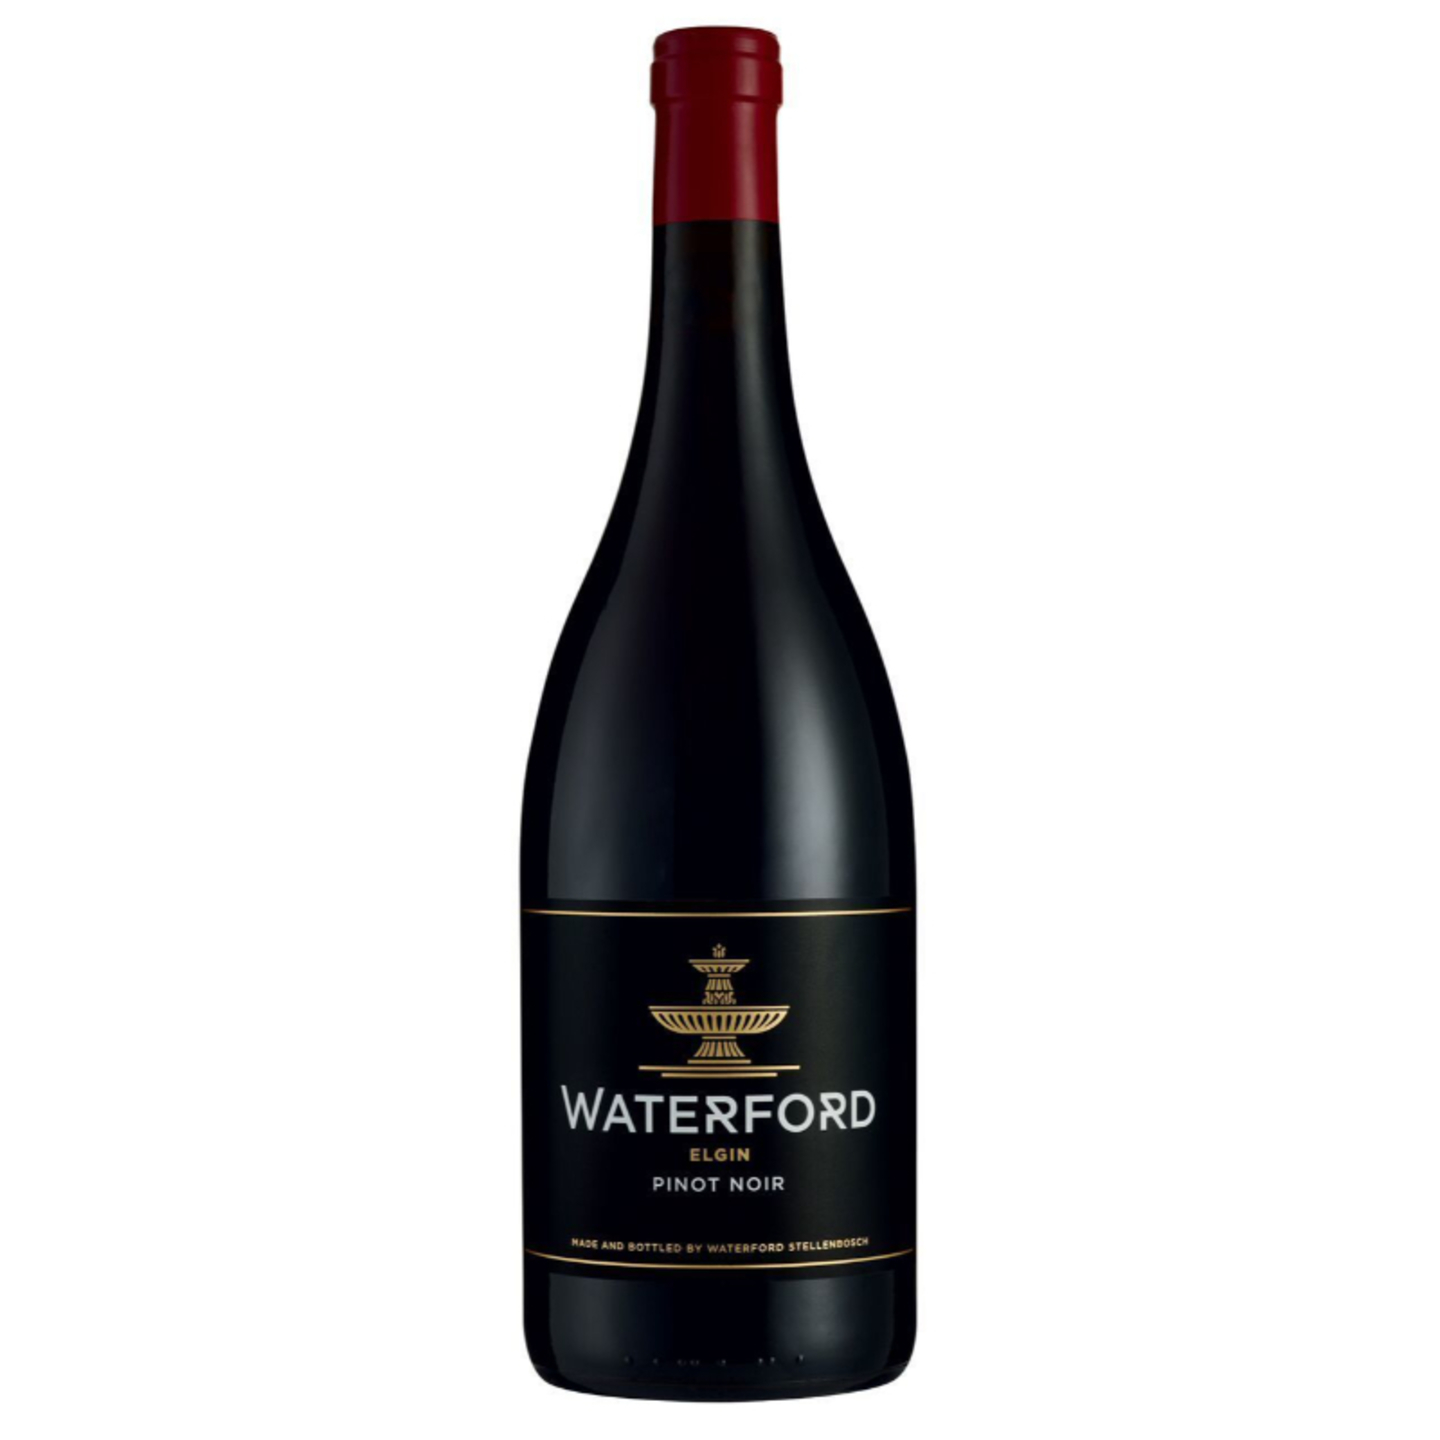 Waterford Elgin Pinot Noir